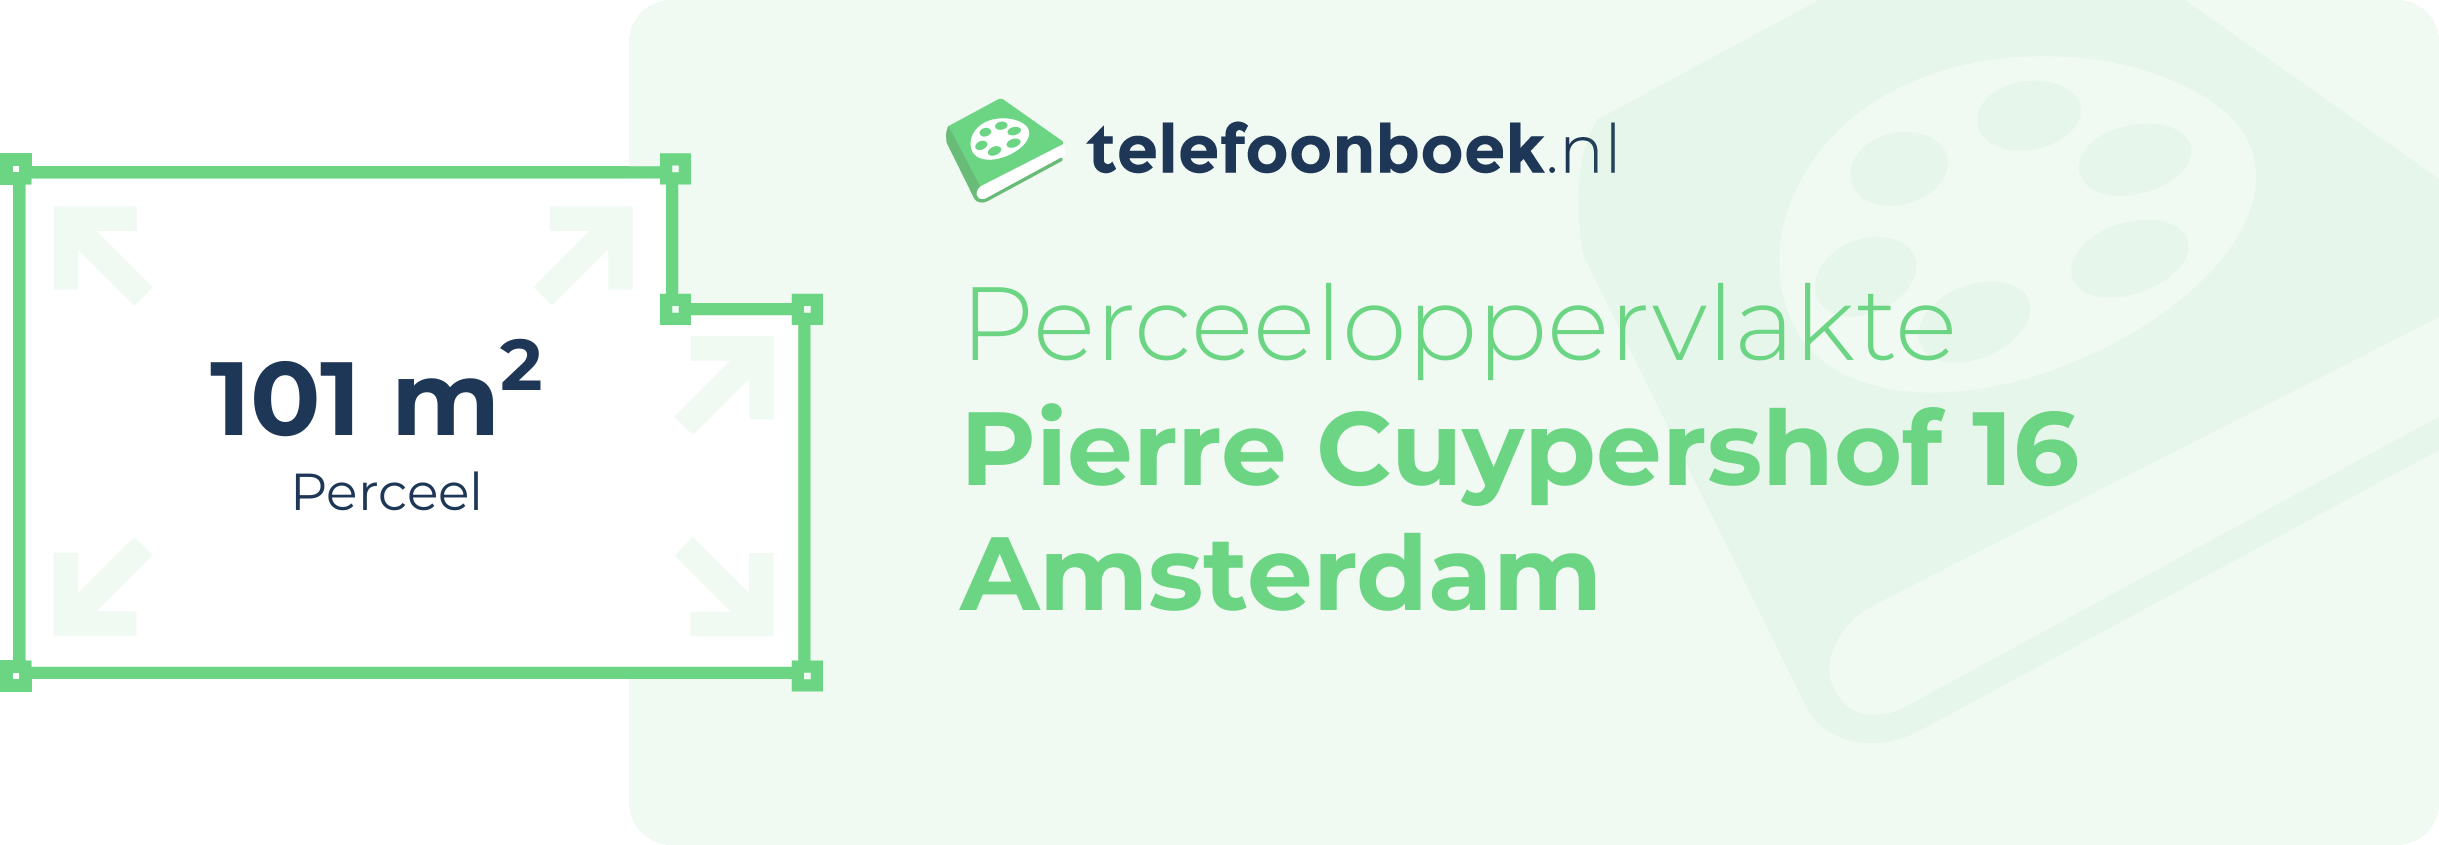 Perceeloppervlakte Pierre Cuypershof 16 Amsterdam